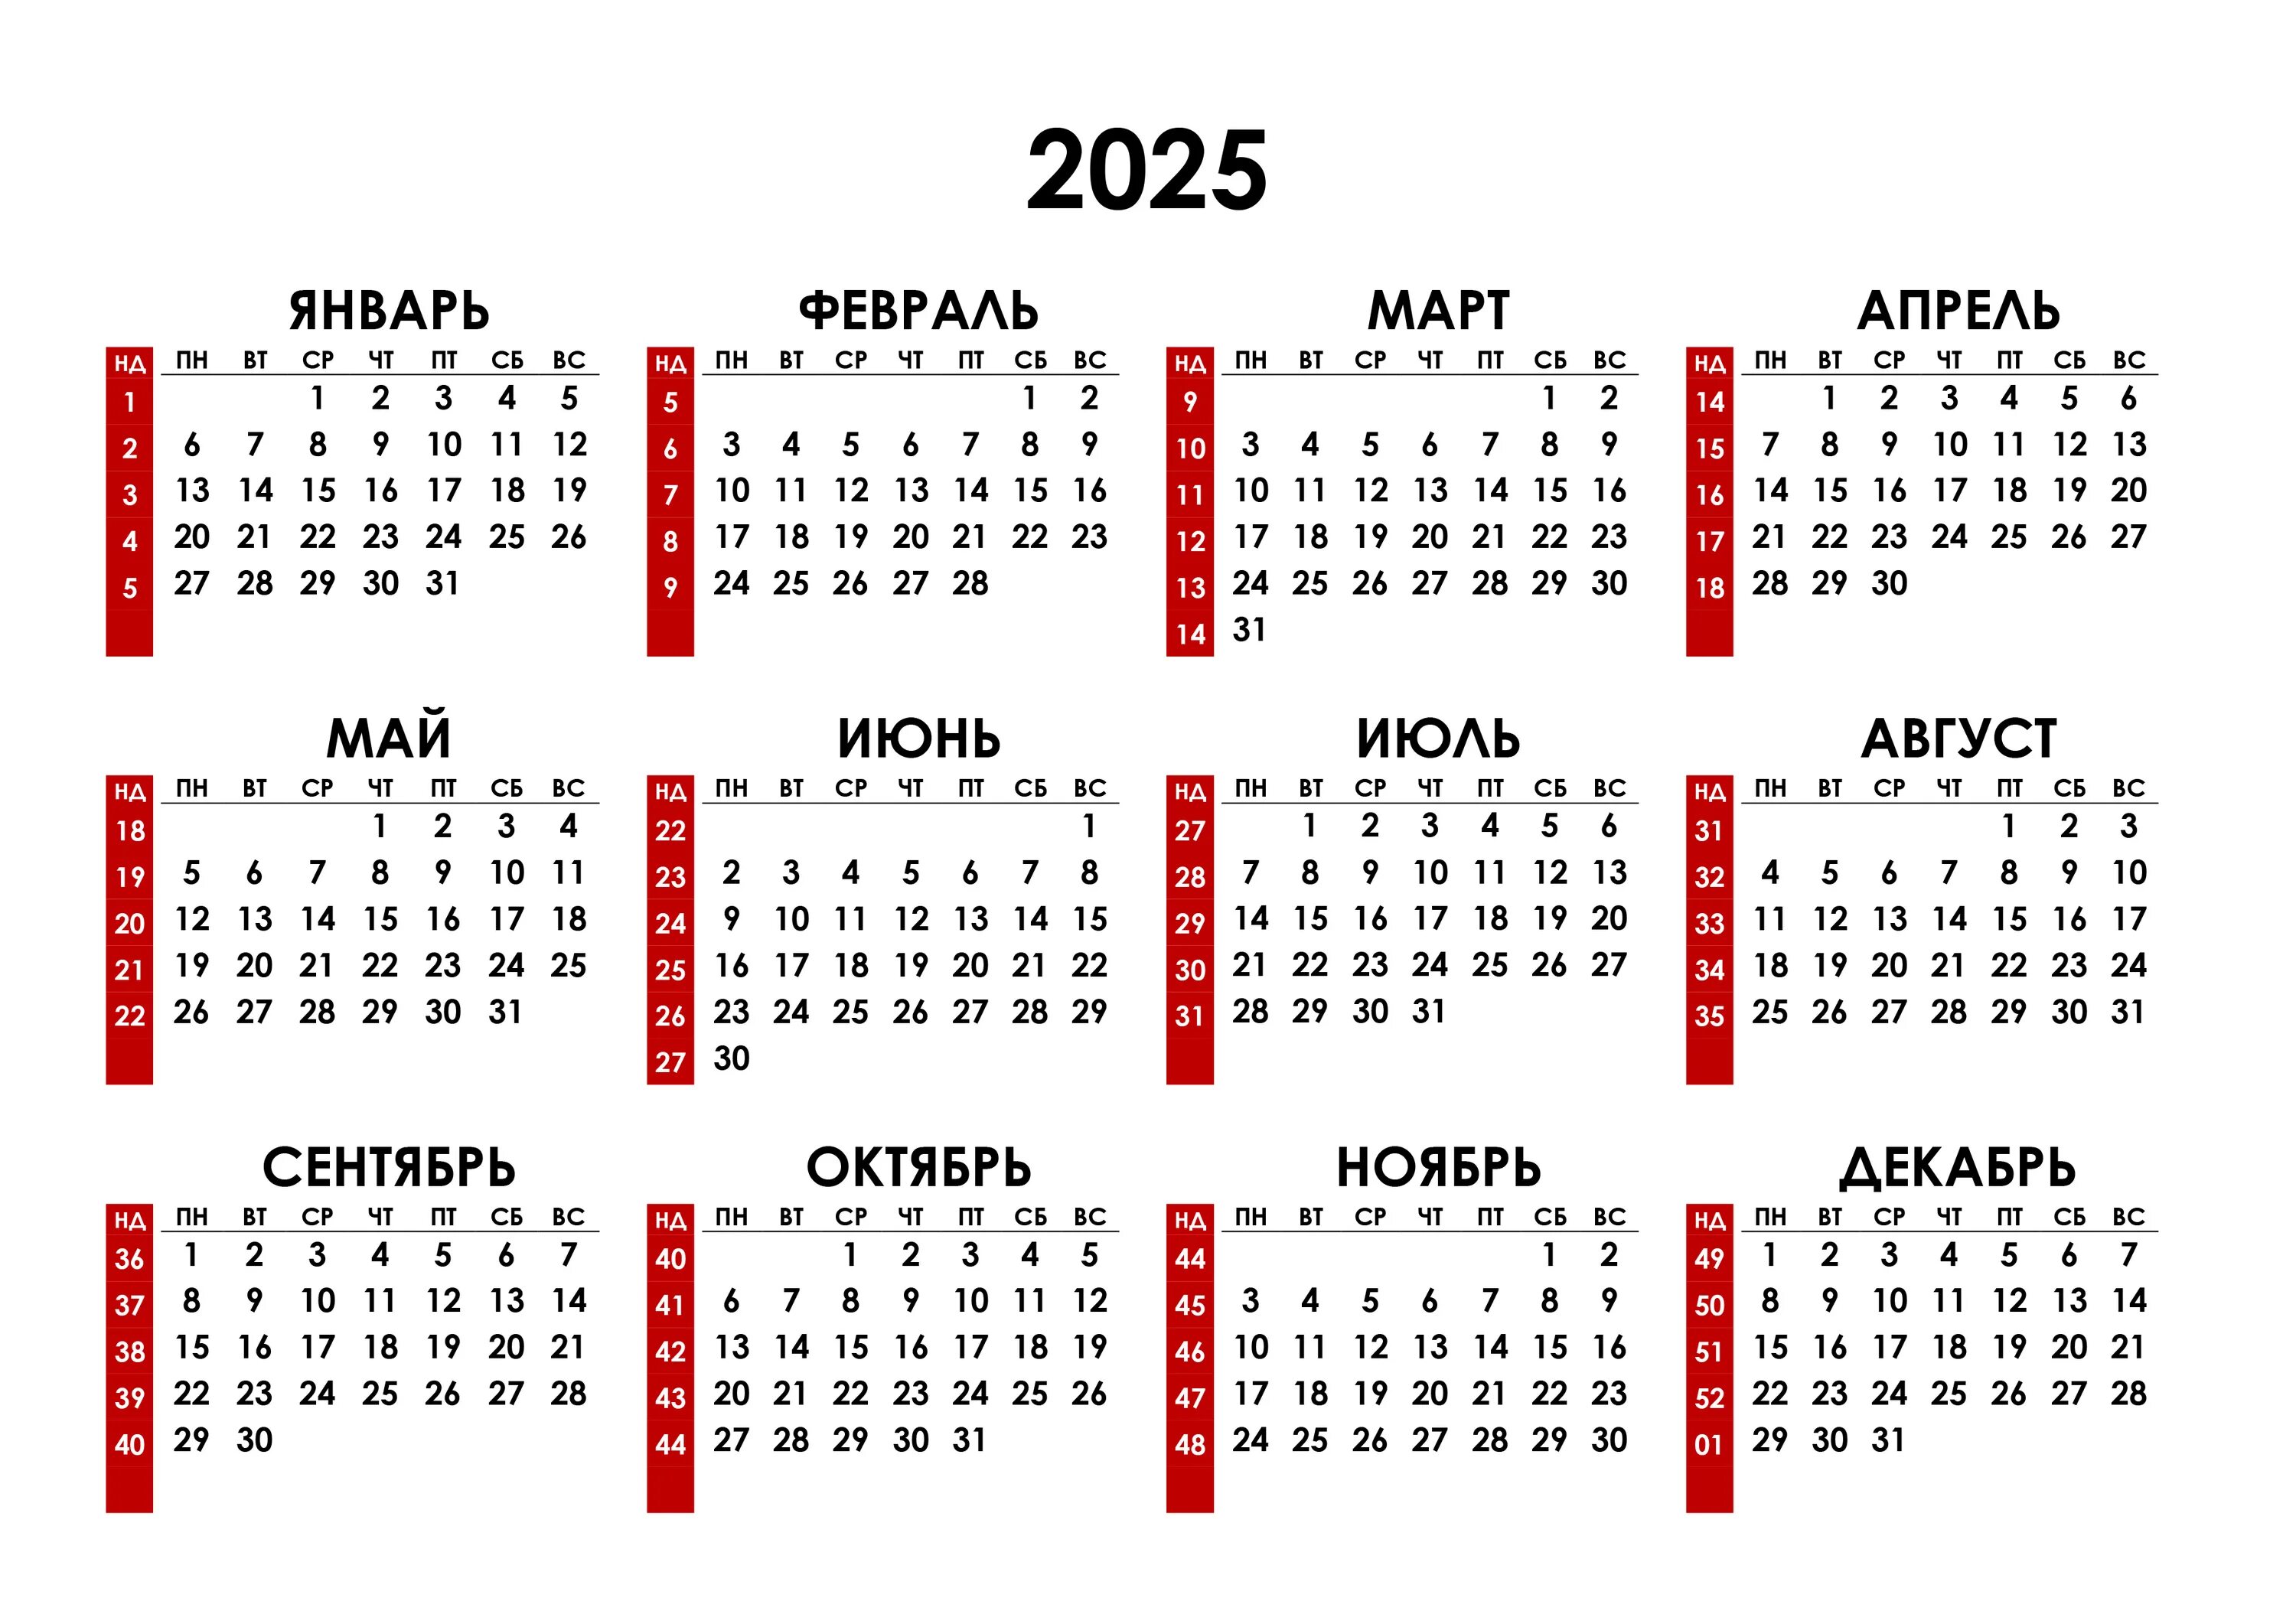 Получить номер недели. Календарь на 2023 год. Календарь с номерами недель 2023. Календарь синомерами недель. Hrfktylfhm PF 2023 ujl.